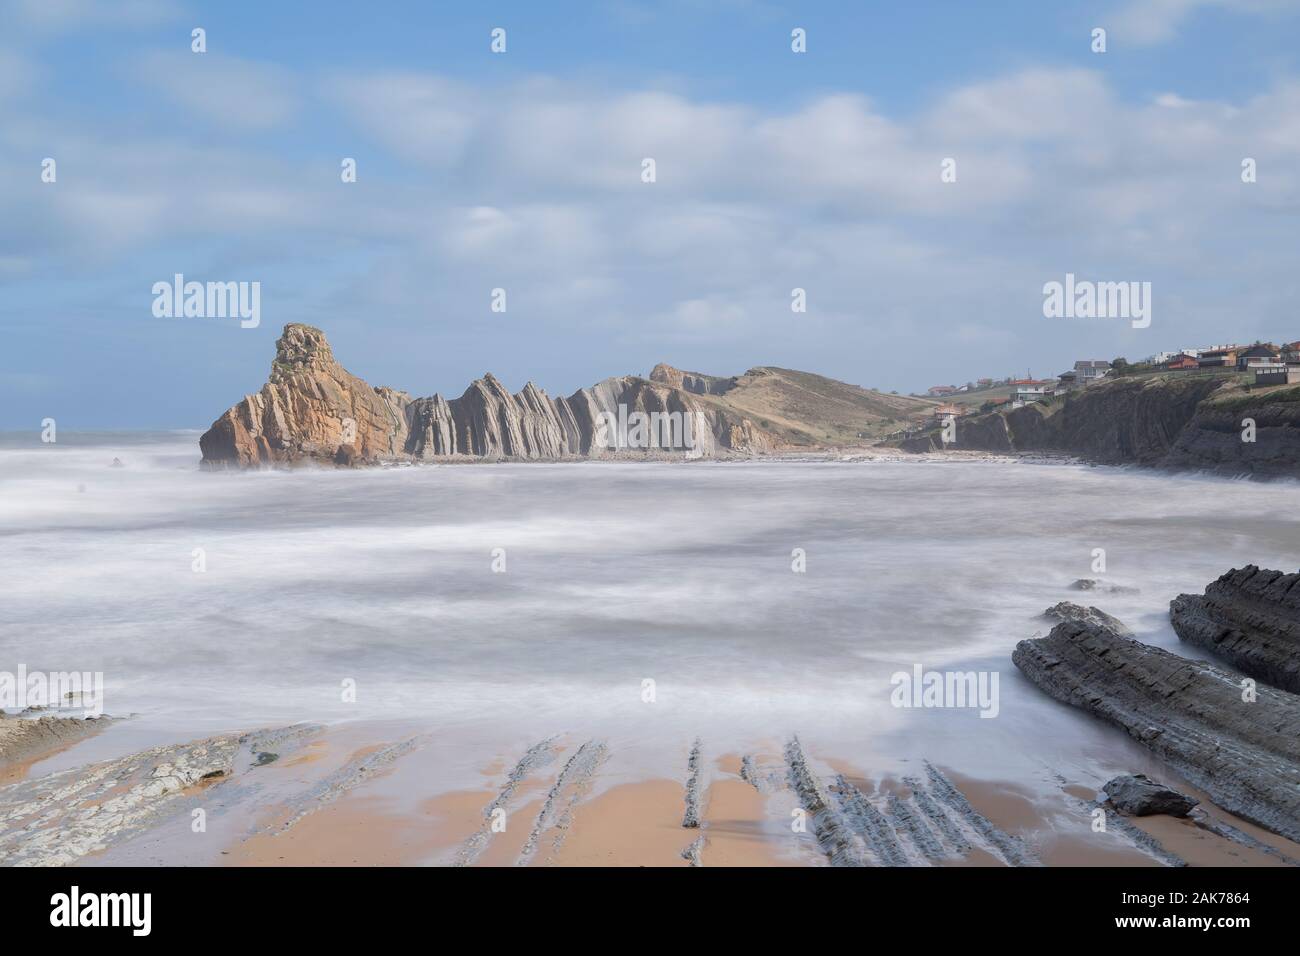 Fotografia paesaggio di una spiaggia nella città di Liencres in cui è possibile vedere le formazioni rocciose erose dal mare, nella provincia di Cantabria,Spagna Foto Stock